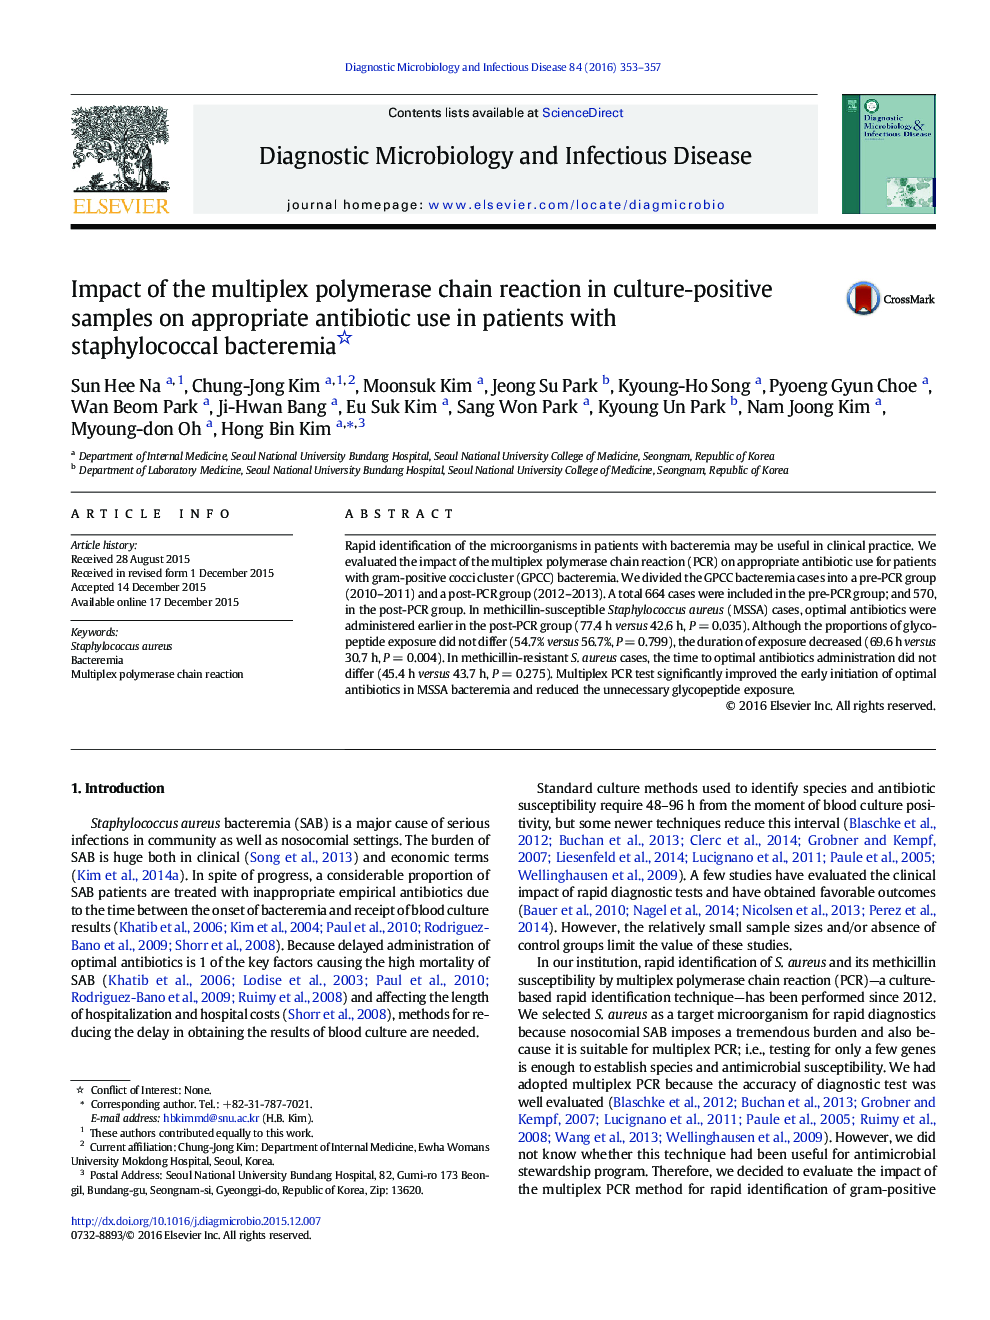 اثر واکنش زنجیره پلیمراز چندگانه در نمونه های مثبت در مصرف آنتی بیوتیک مناسب در بیماران مبتلا به باکتری های استافیلوکوک 